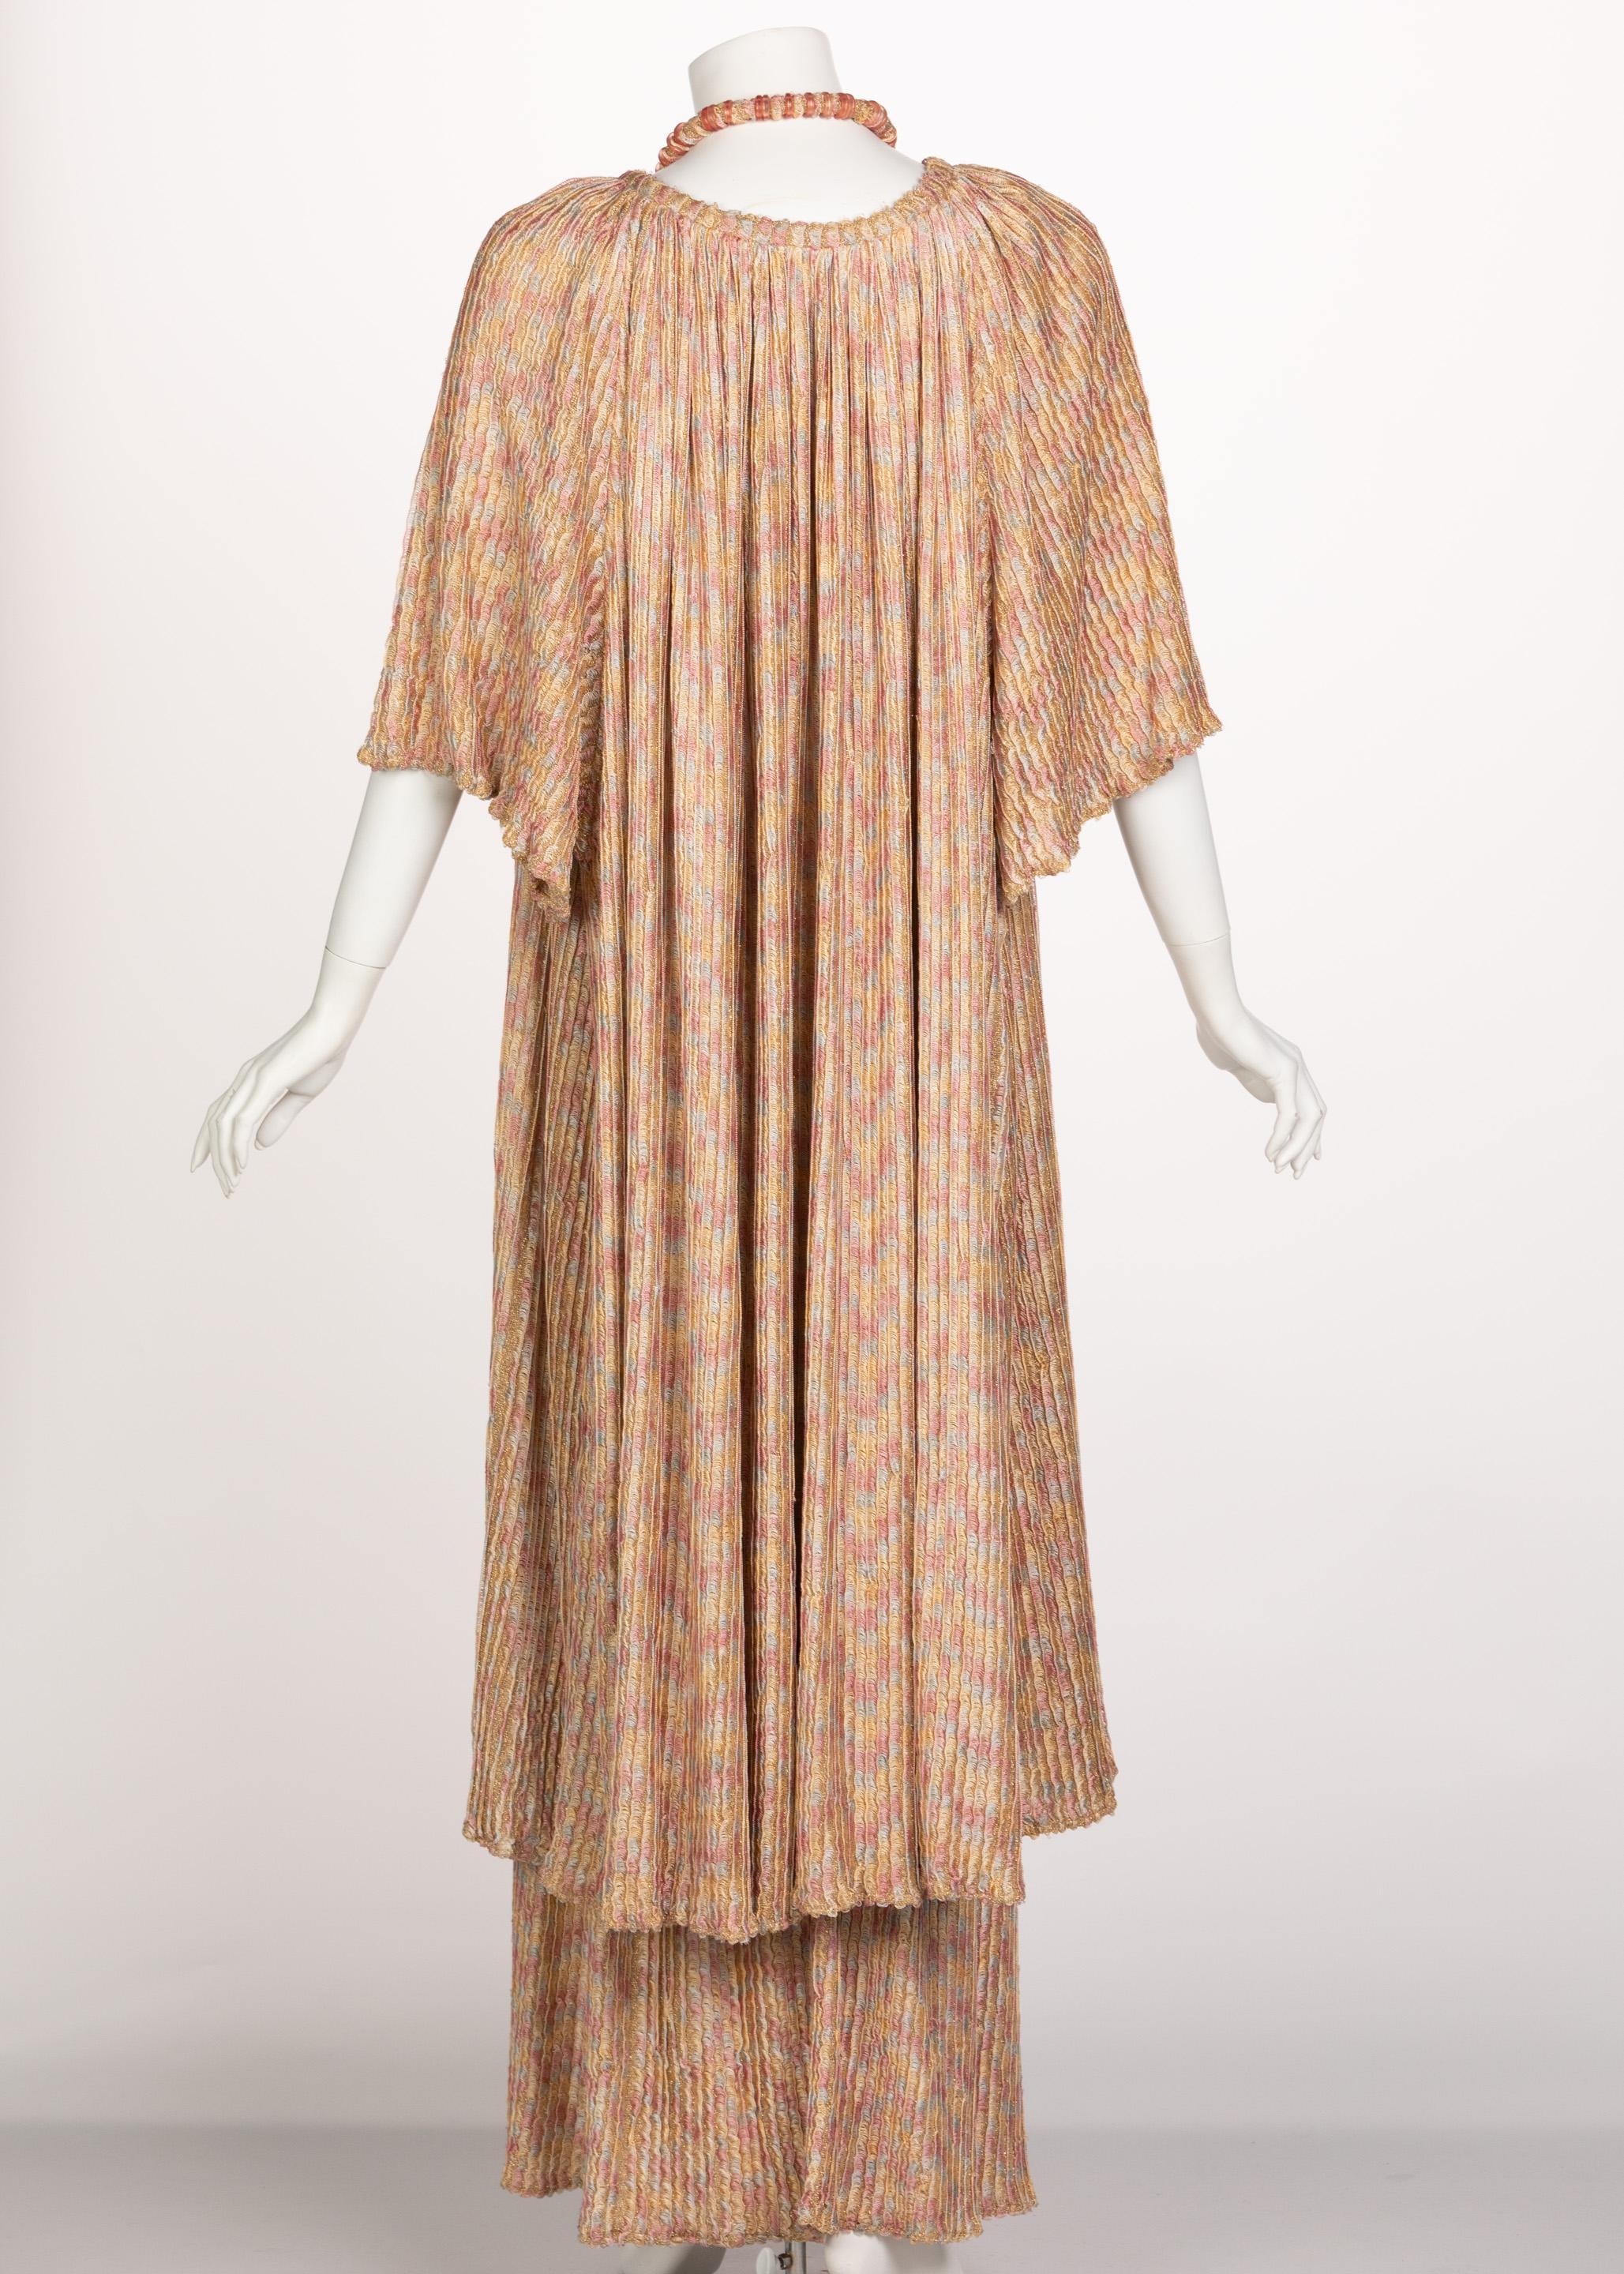 Missoni - Ensemble robe longue cardigan et collier en maille dorée rose, années 1970 Excellent état - En vente à Boca Raton, FL